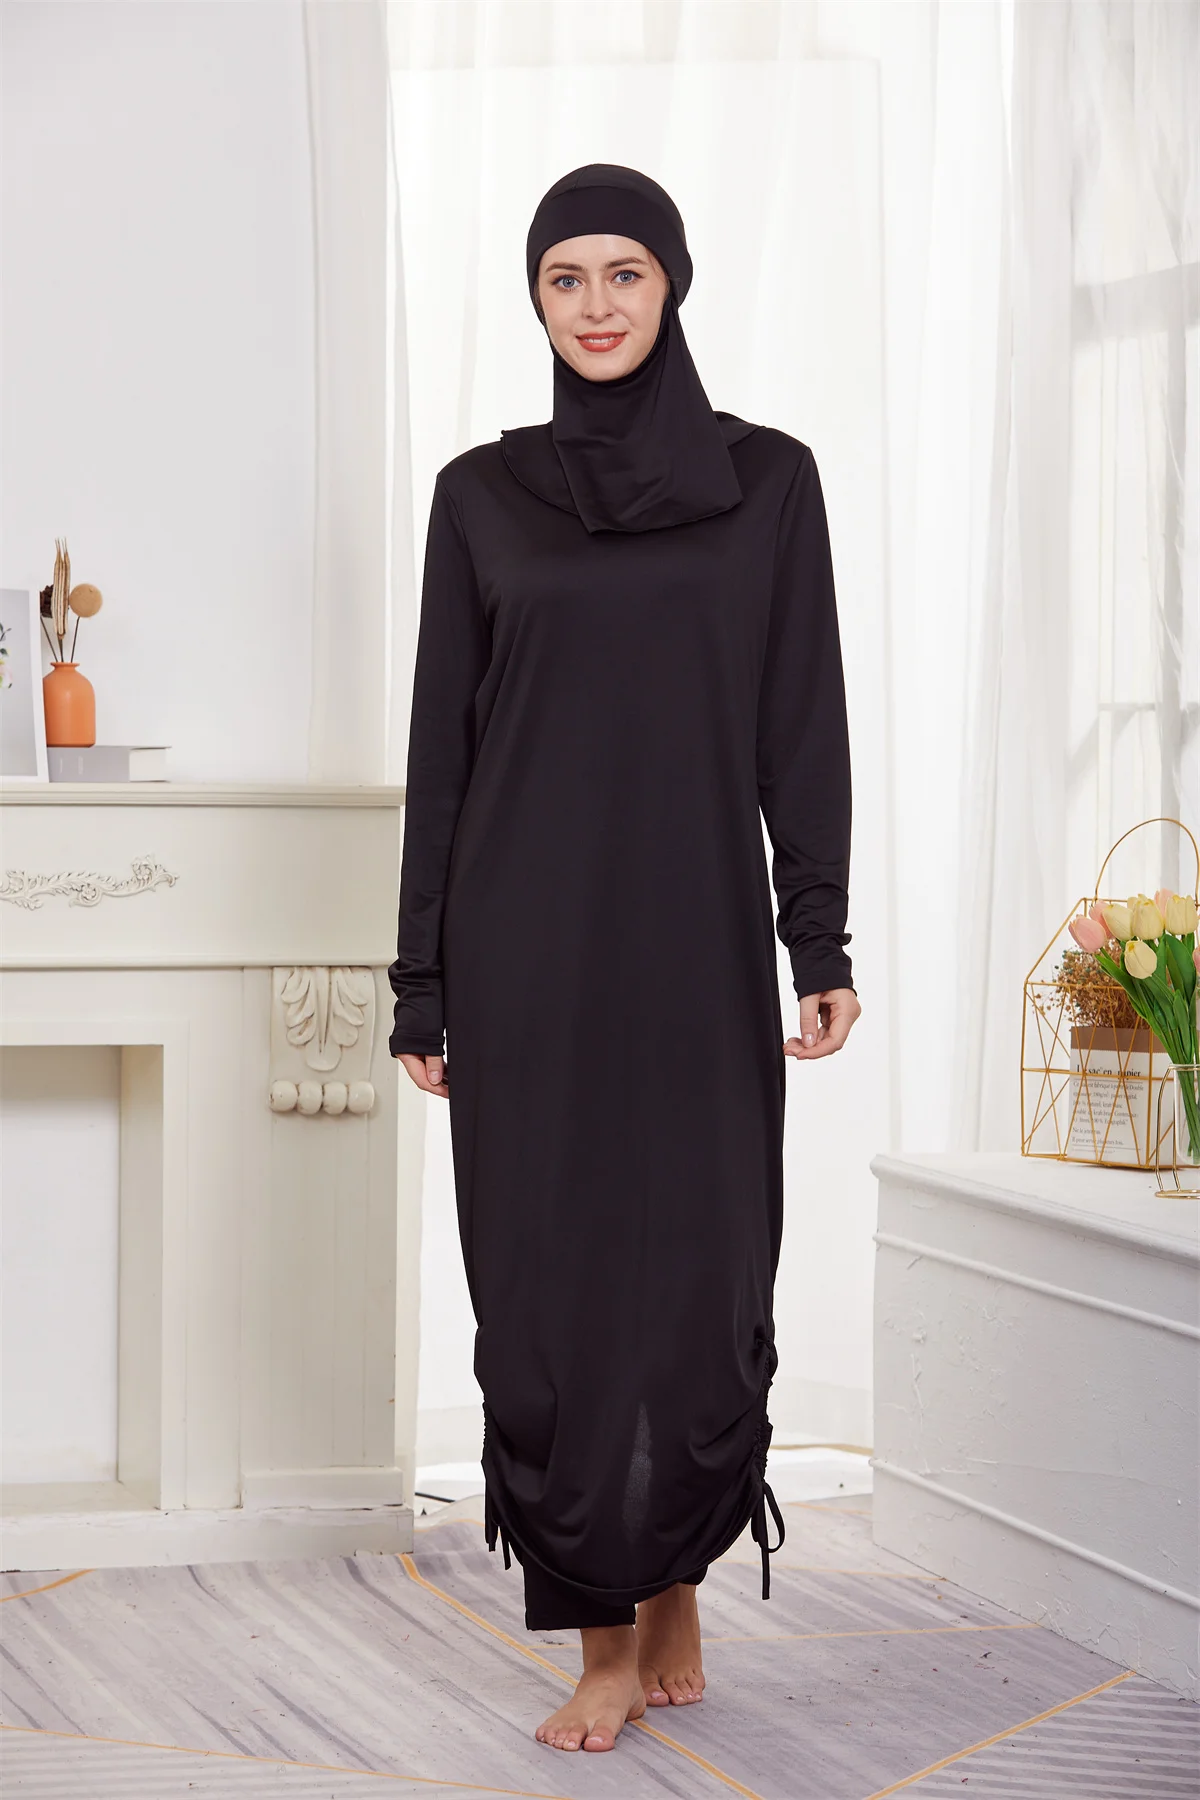 Мусульманские скромные буркини, женские купальники с длинным рукавом для всего тела, Исламский купальник, Пляжная одежда, комплекты шапочек-хиджабов для плавания 4